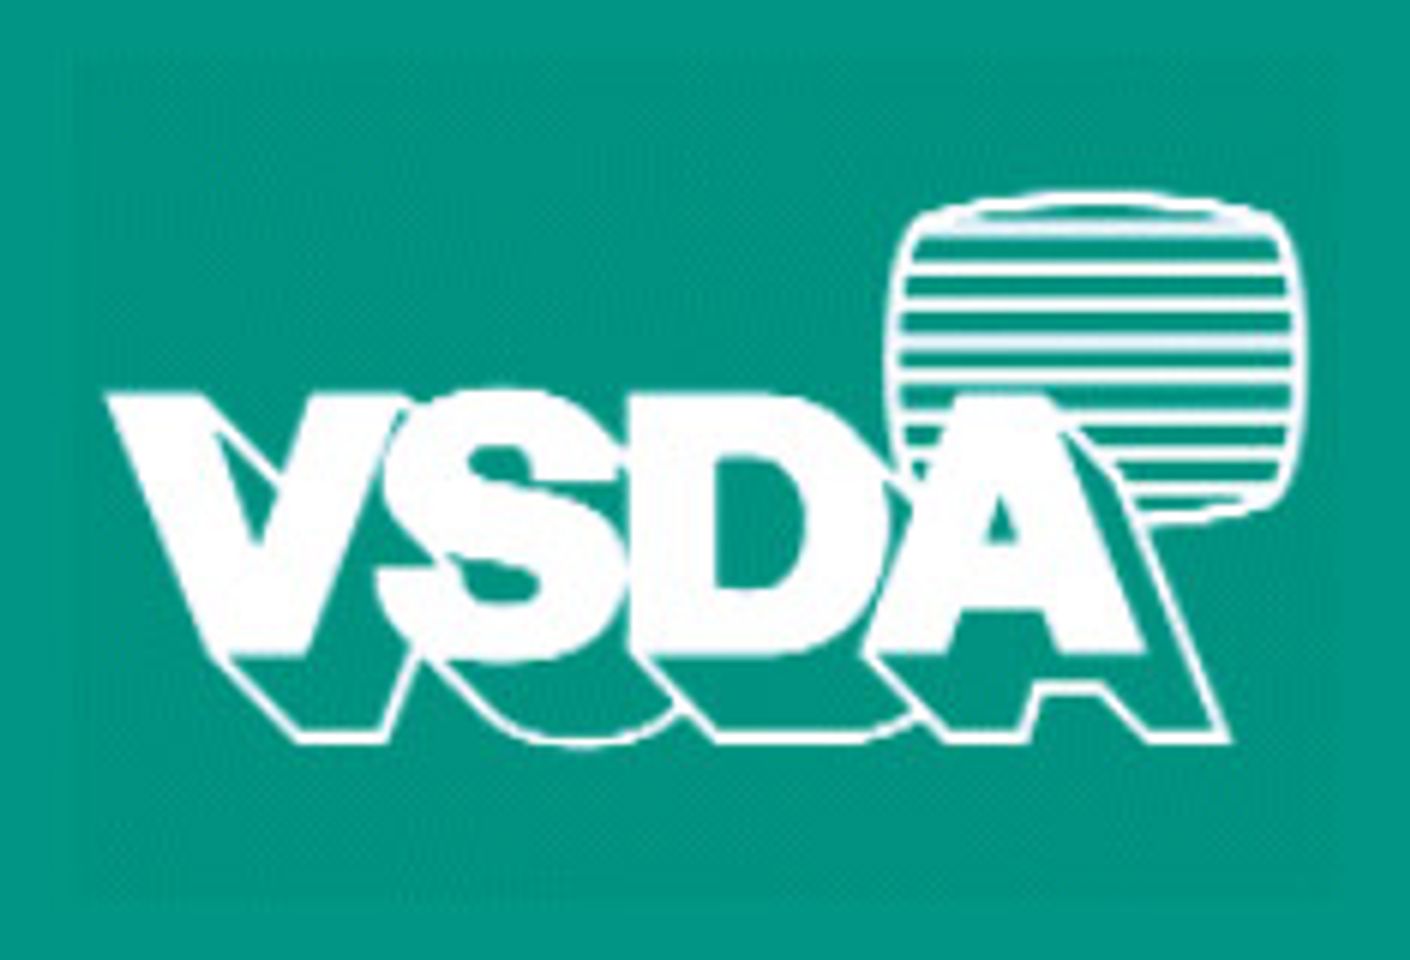 VSDA President Calls for Compromise in High-Def Format War